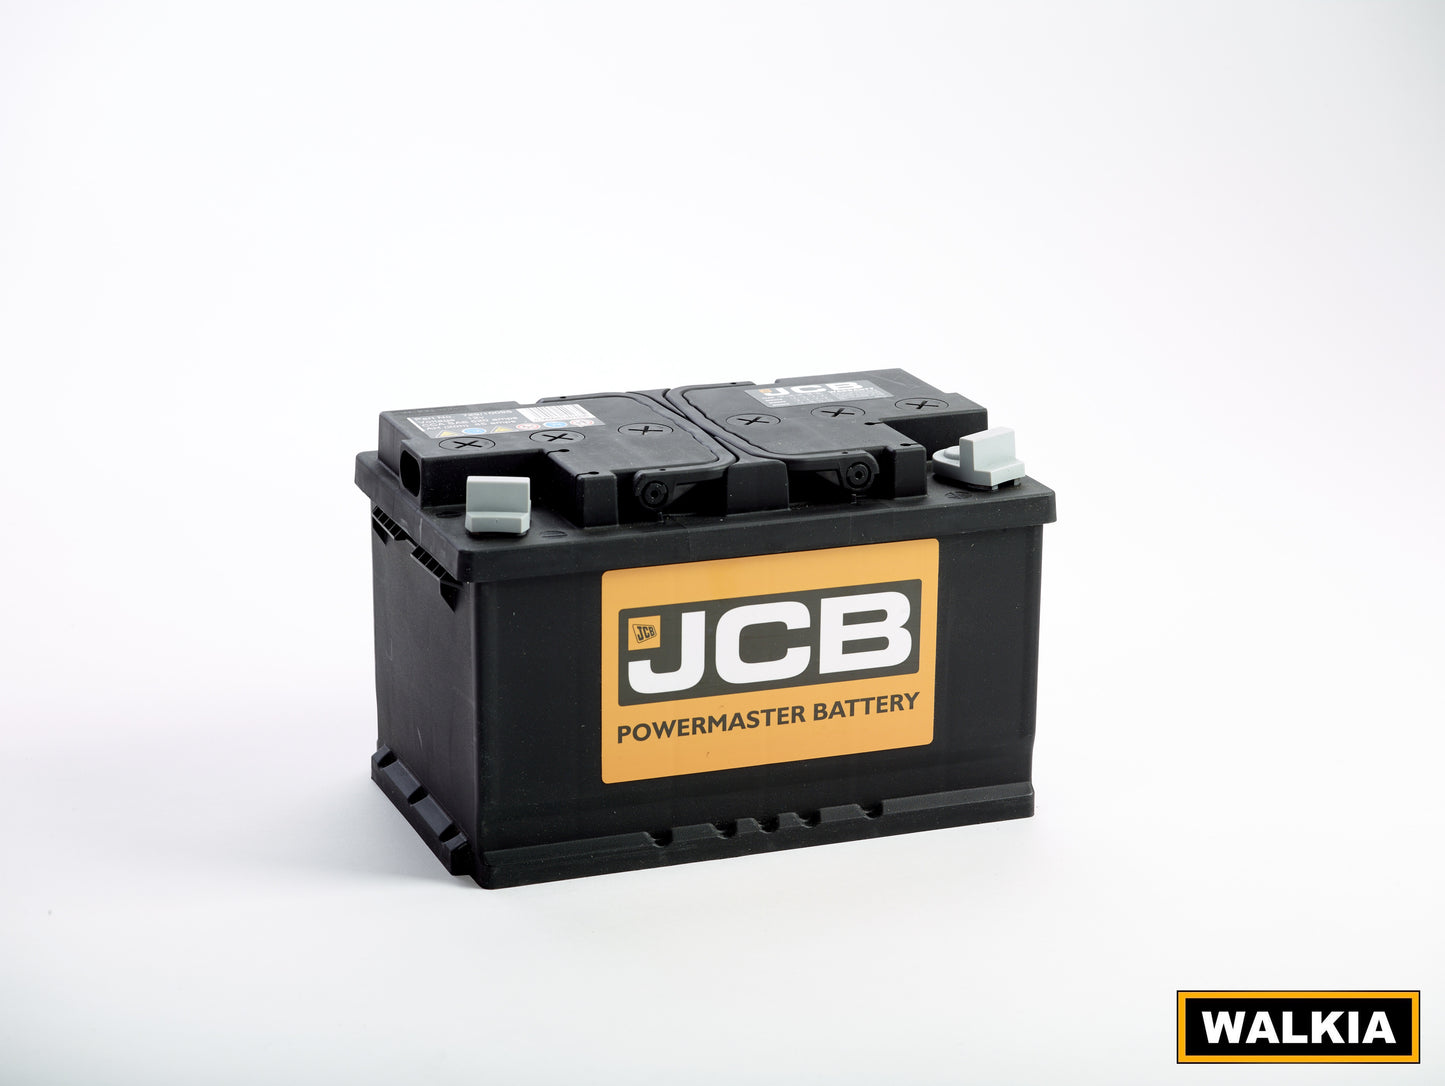 Batería JCB (12 V) de 105 Ah, CCA (SAE) 750 Amps